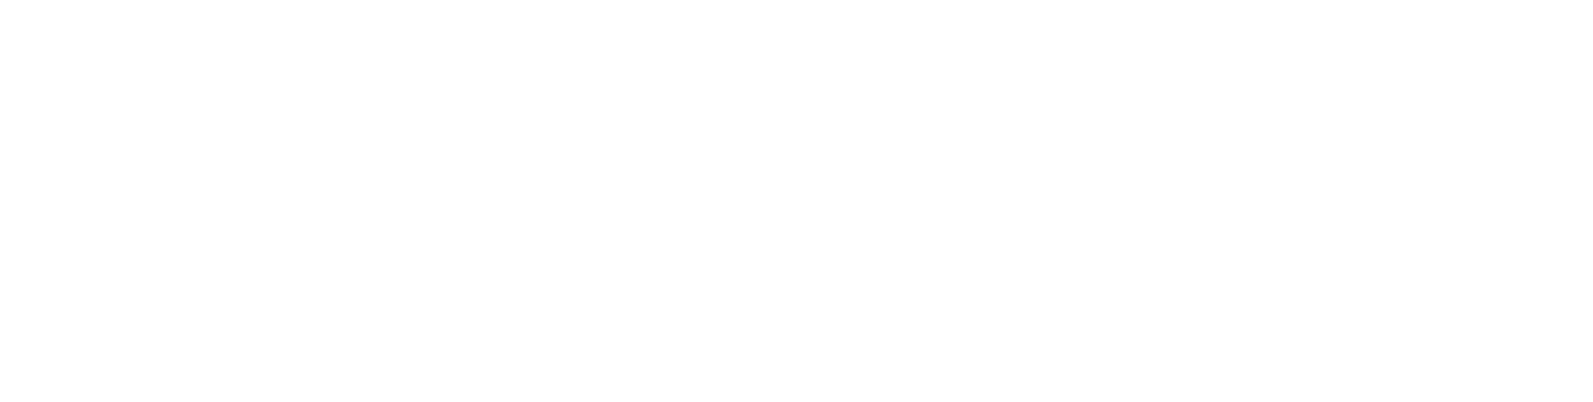 Hooker Furniture logo large for dark backgrounds (transparent PNG)